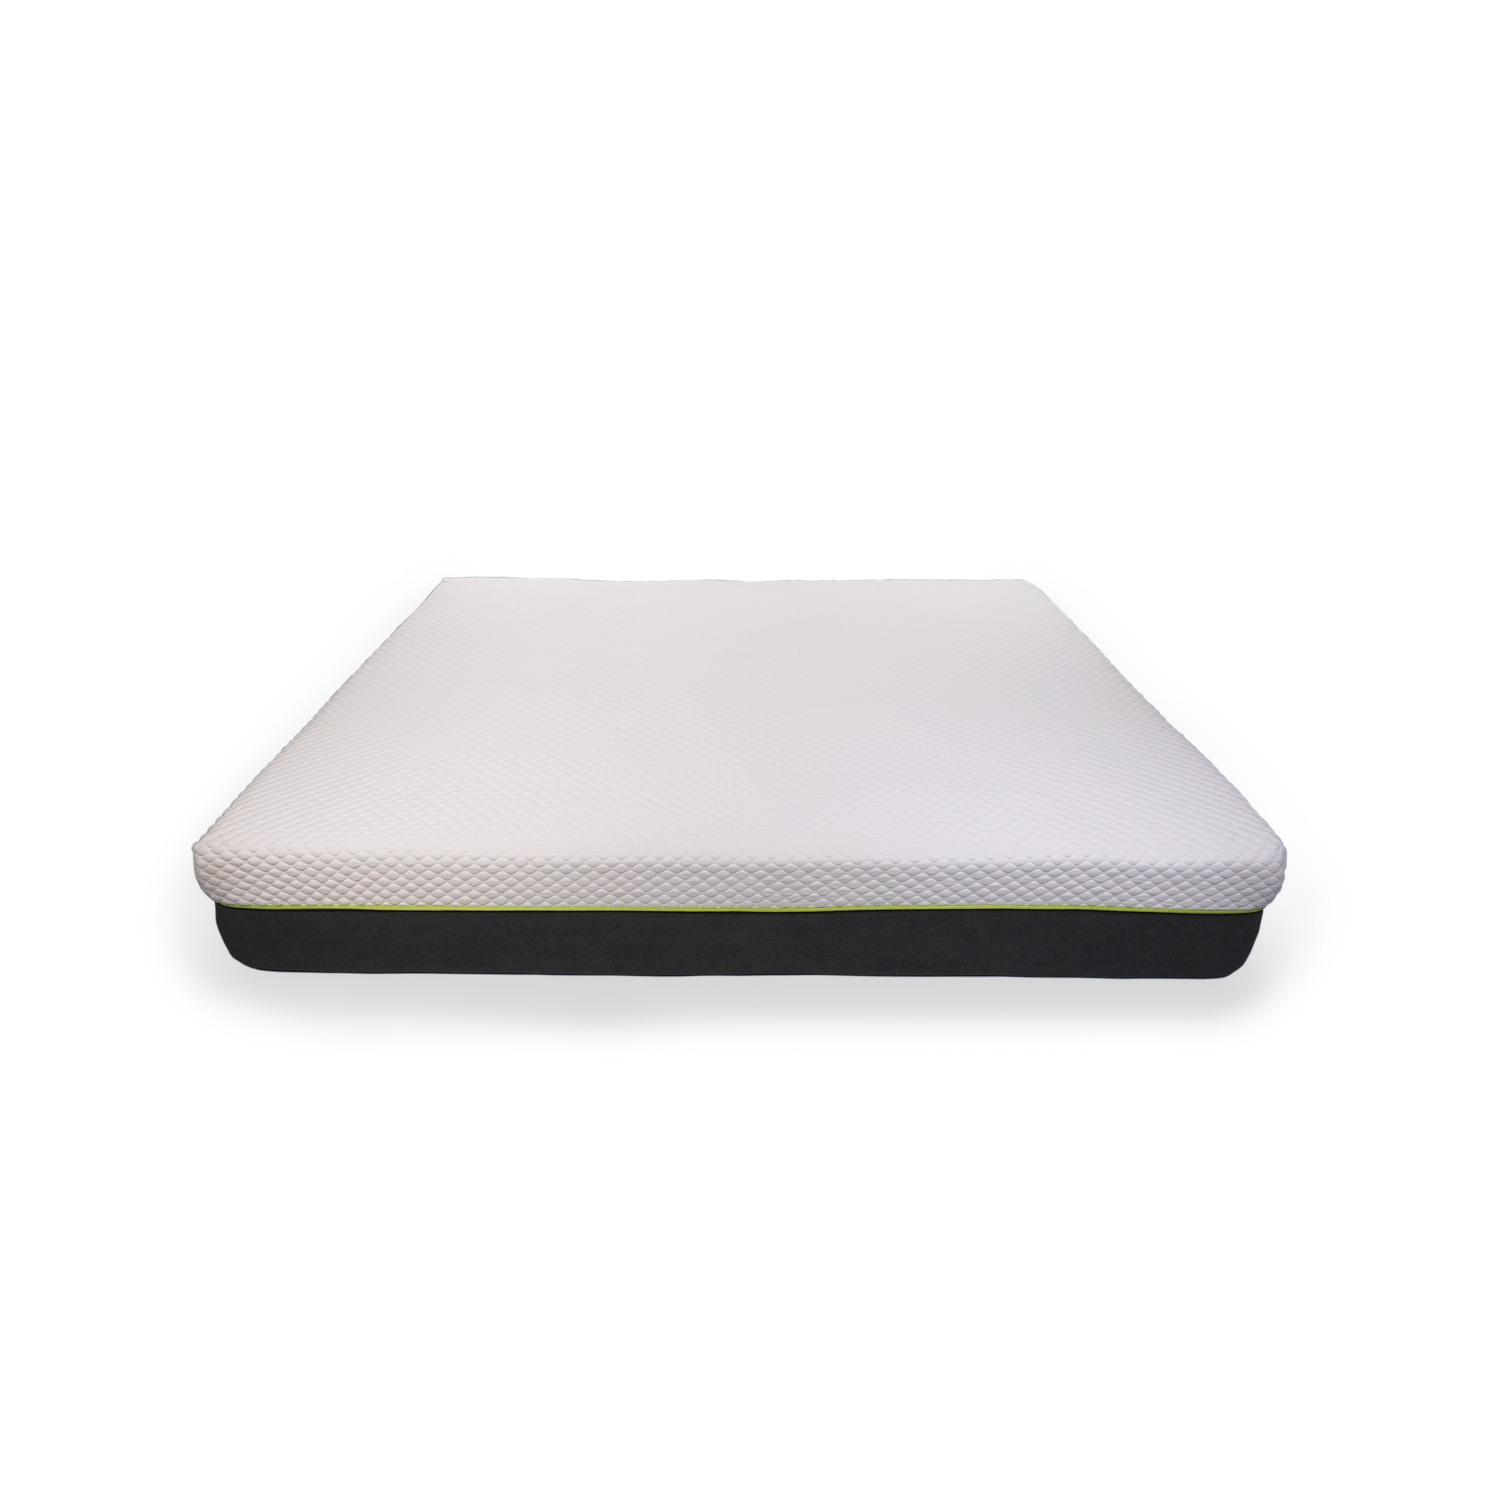 Colchón Individual Memory Foam en caja Premium Sky Nimbuzzz - Ecart